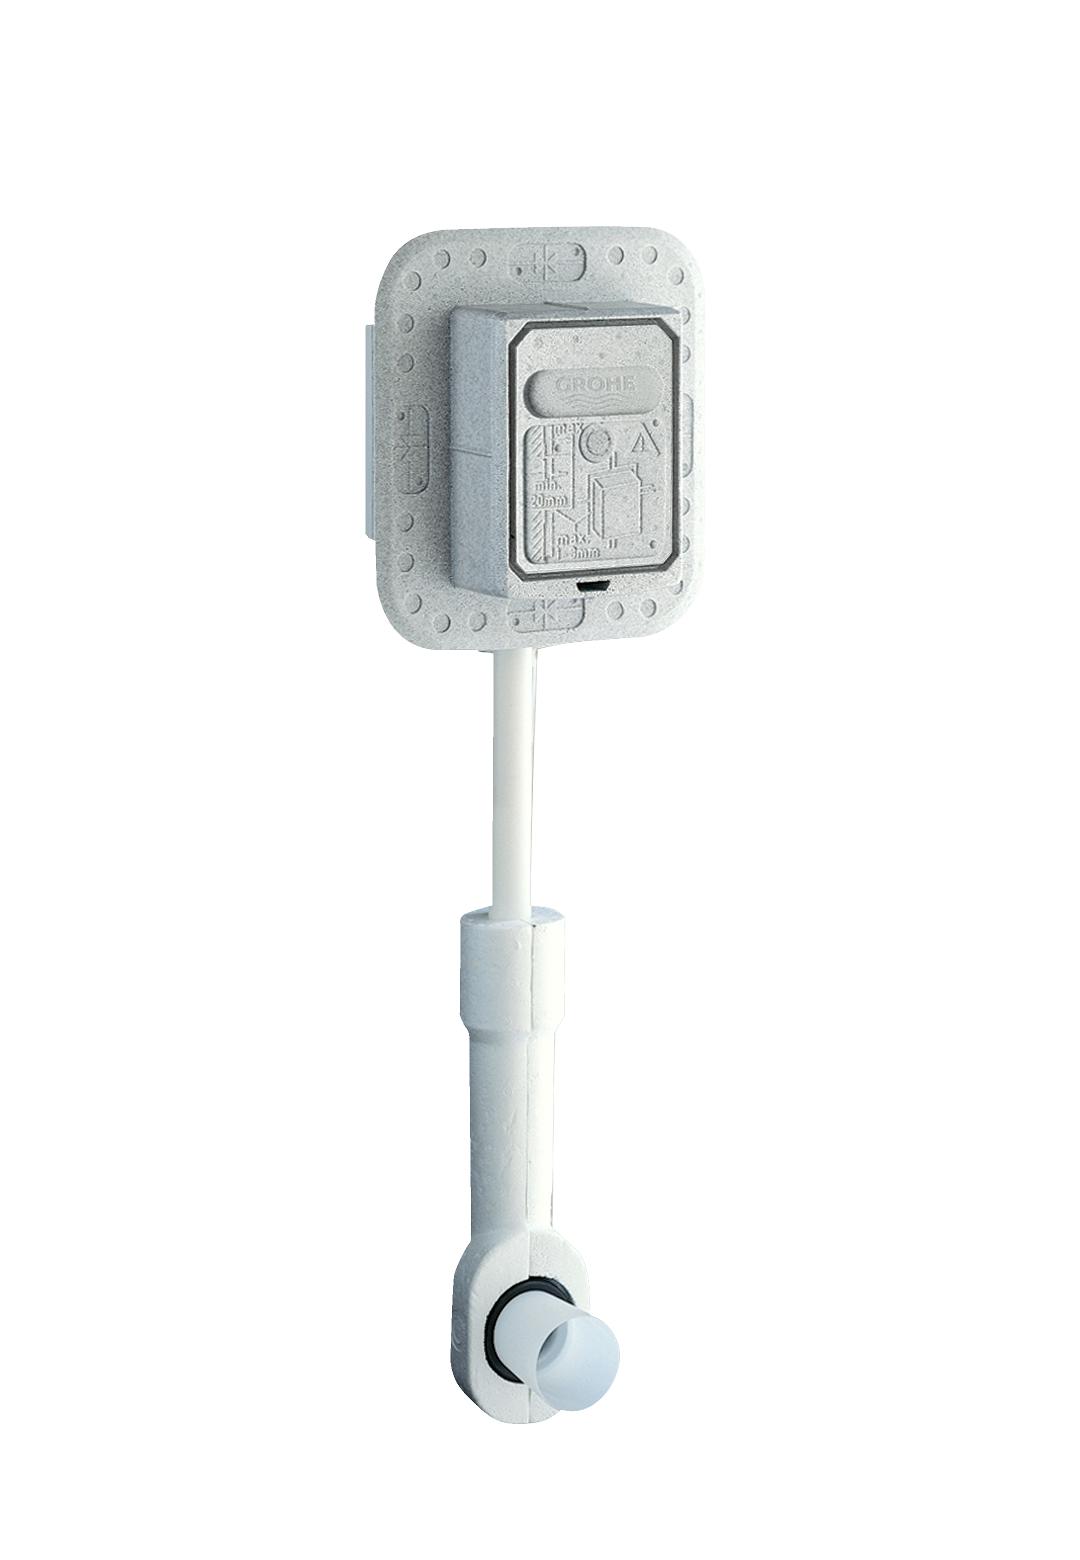 Смывное устройство под давлением для унитаза Grohe Rondo без ИК-панели смыва